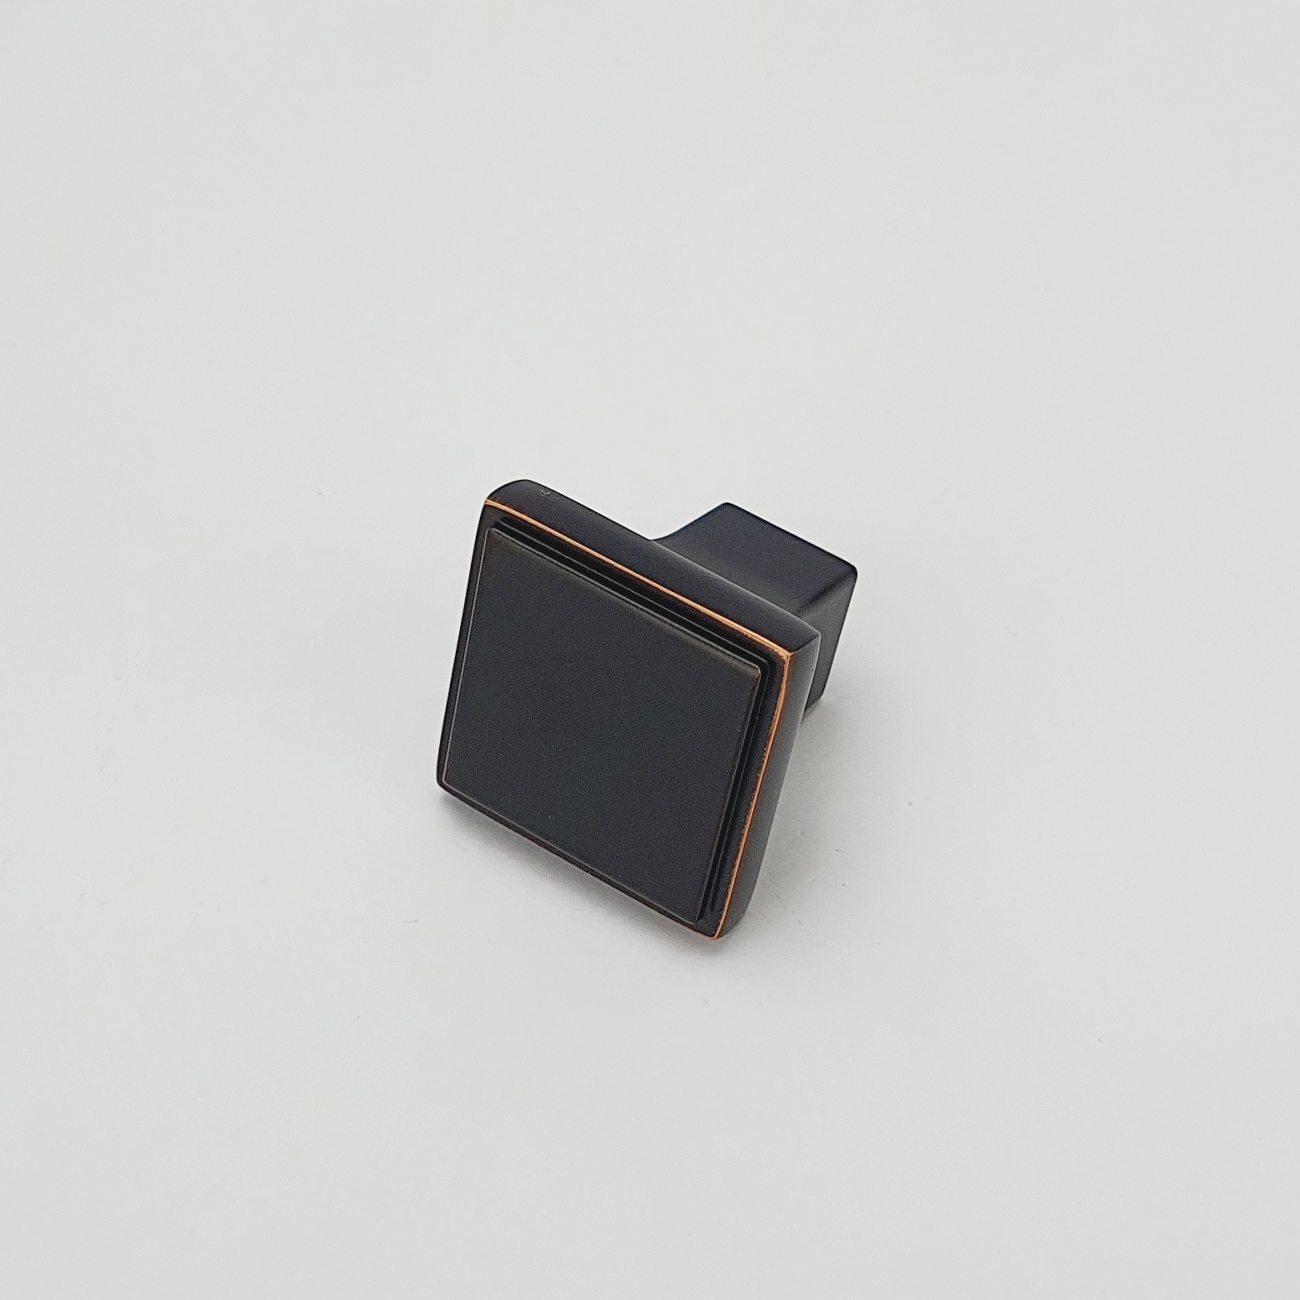 Núm cửa tủ vuông màu đen viền vàng NK026-DH được thiết kế tinh tế dạng khối vuông từ hợp kim và được mạ màu đặc trưng để tạo nên vẻ đẹp đặc trưng của một sản phẩm nội thất.